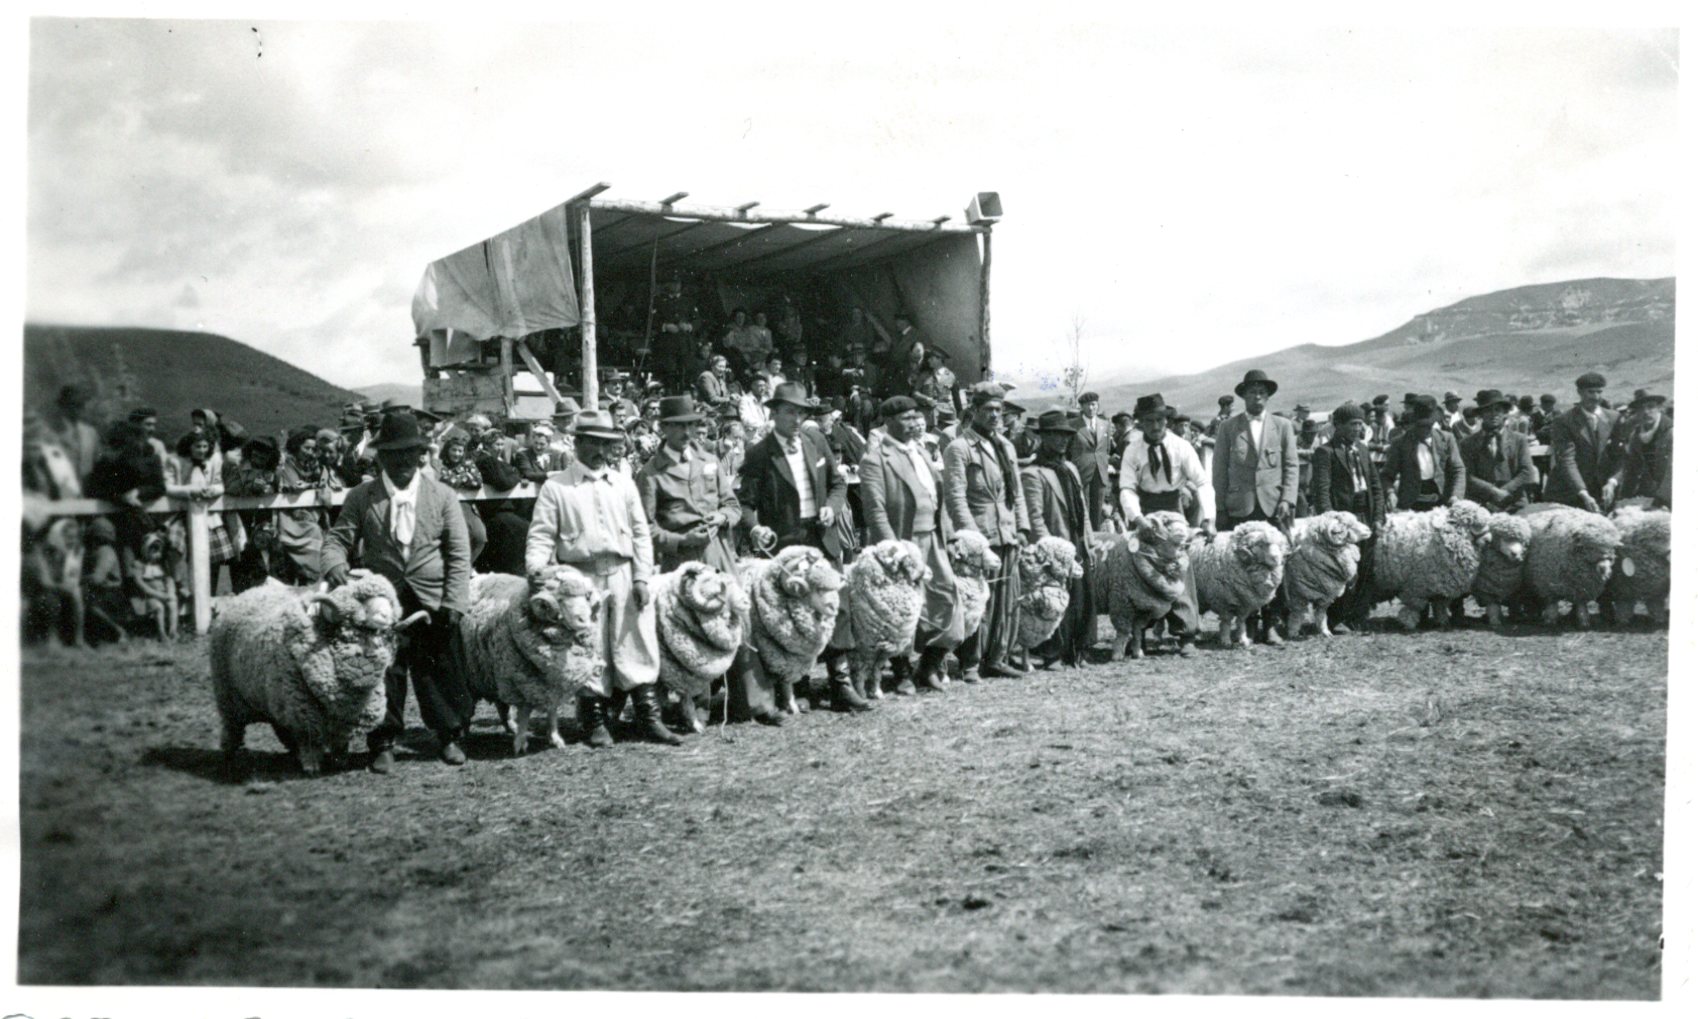 La Sociedad Rural del Neuquén cumplió 90 años y los reclarmos originarios siguen intactos. (Sociedad Rural del Neuquén)